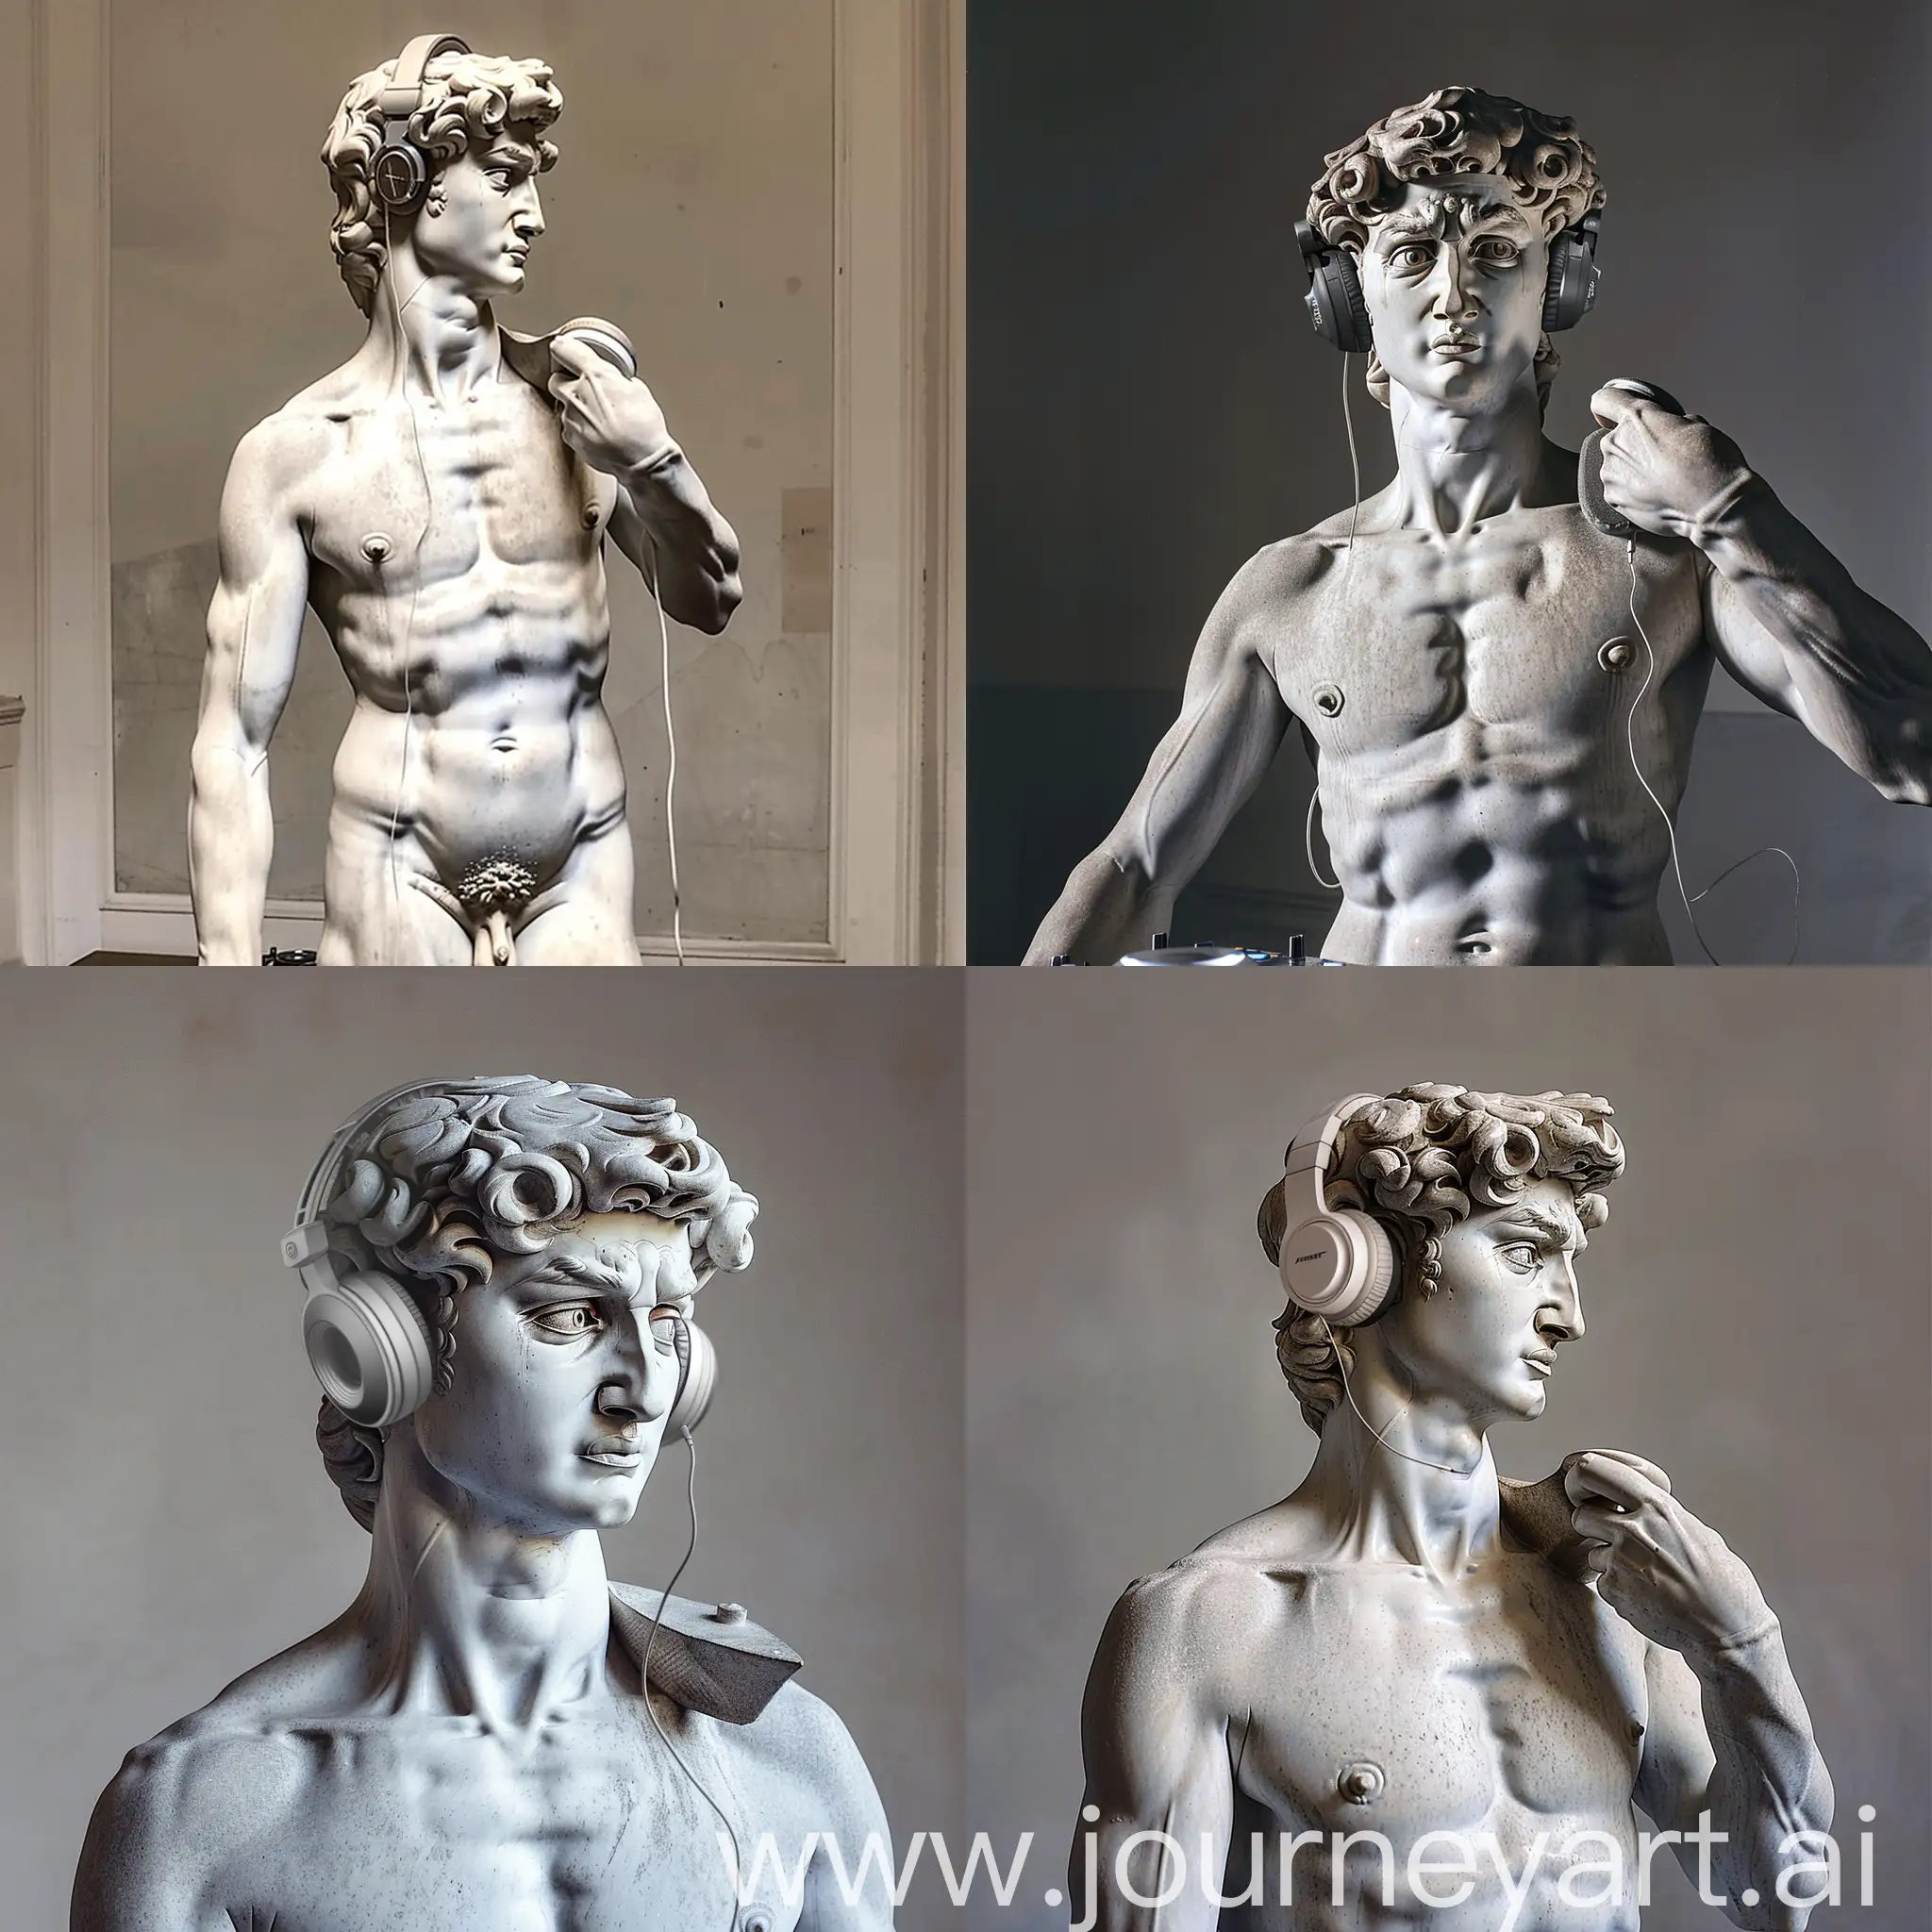 Michelangelos-David-Sculpture-DJing-with-Headphones